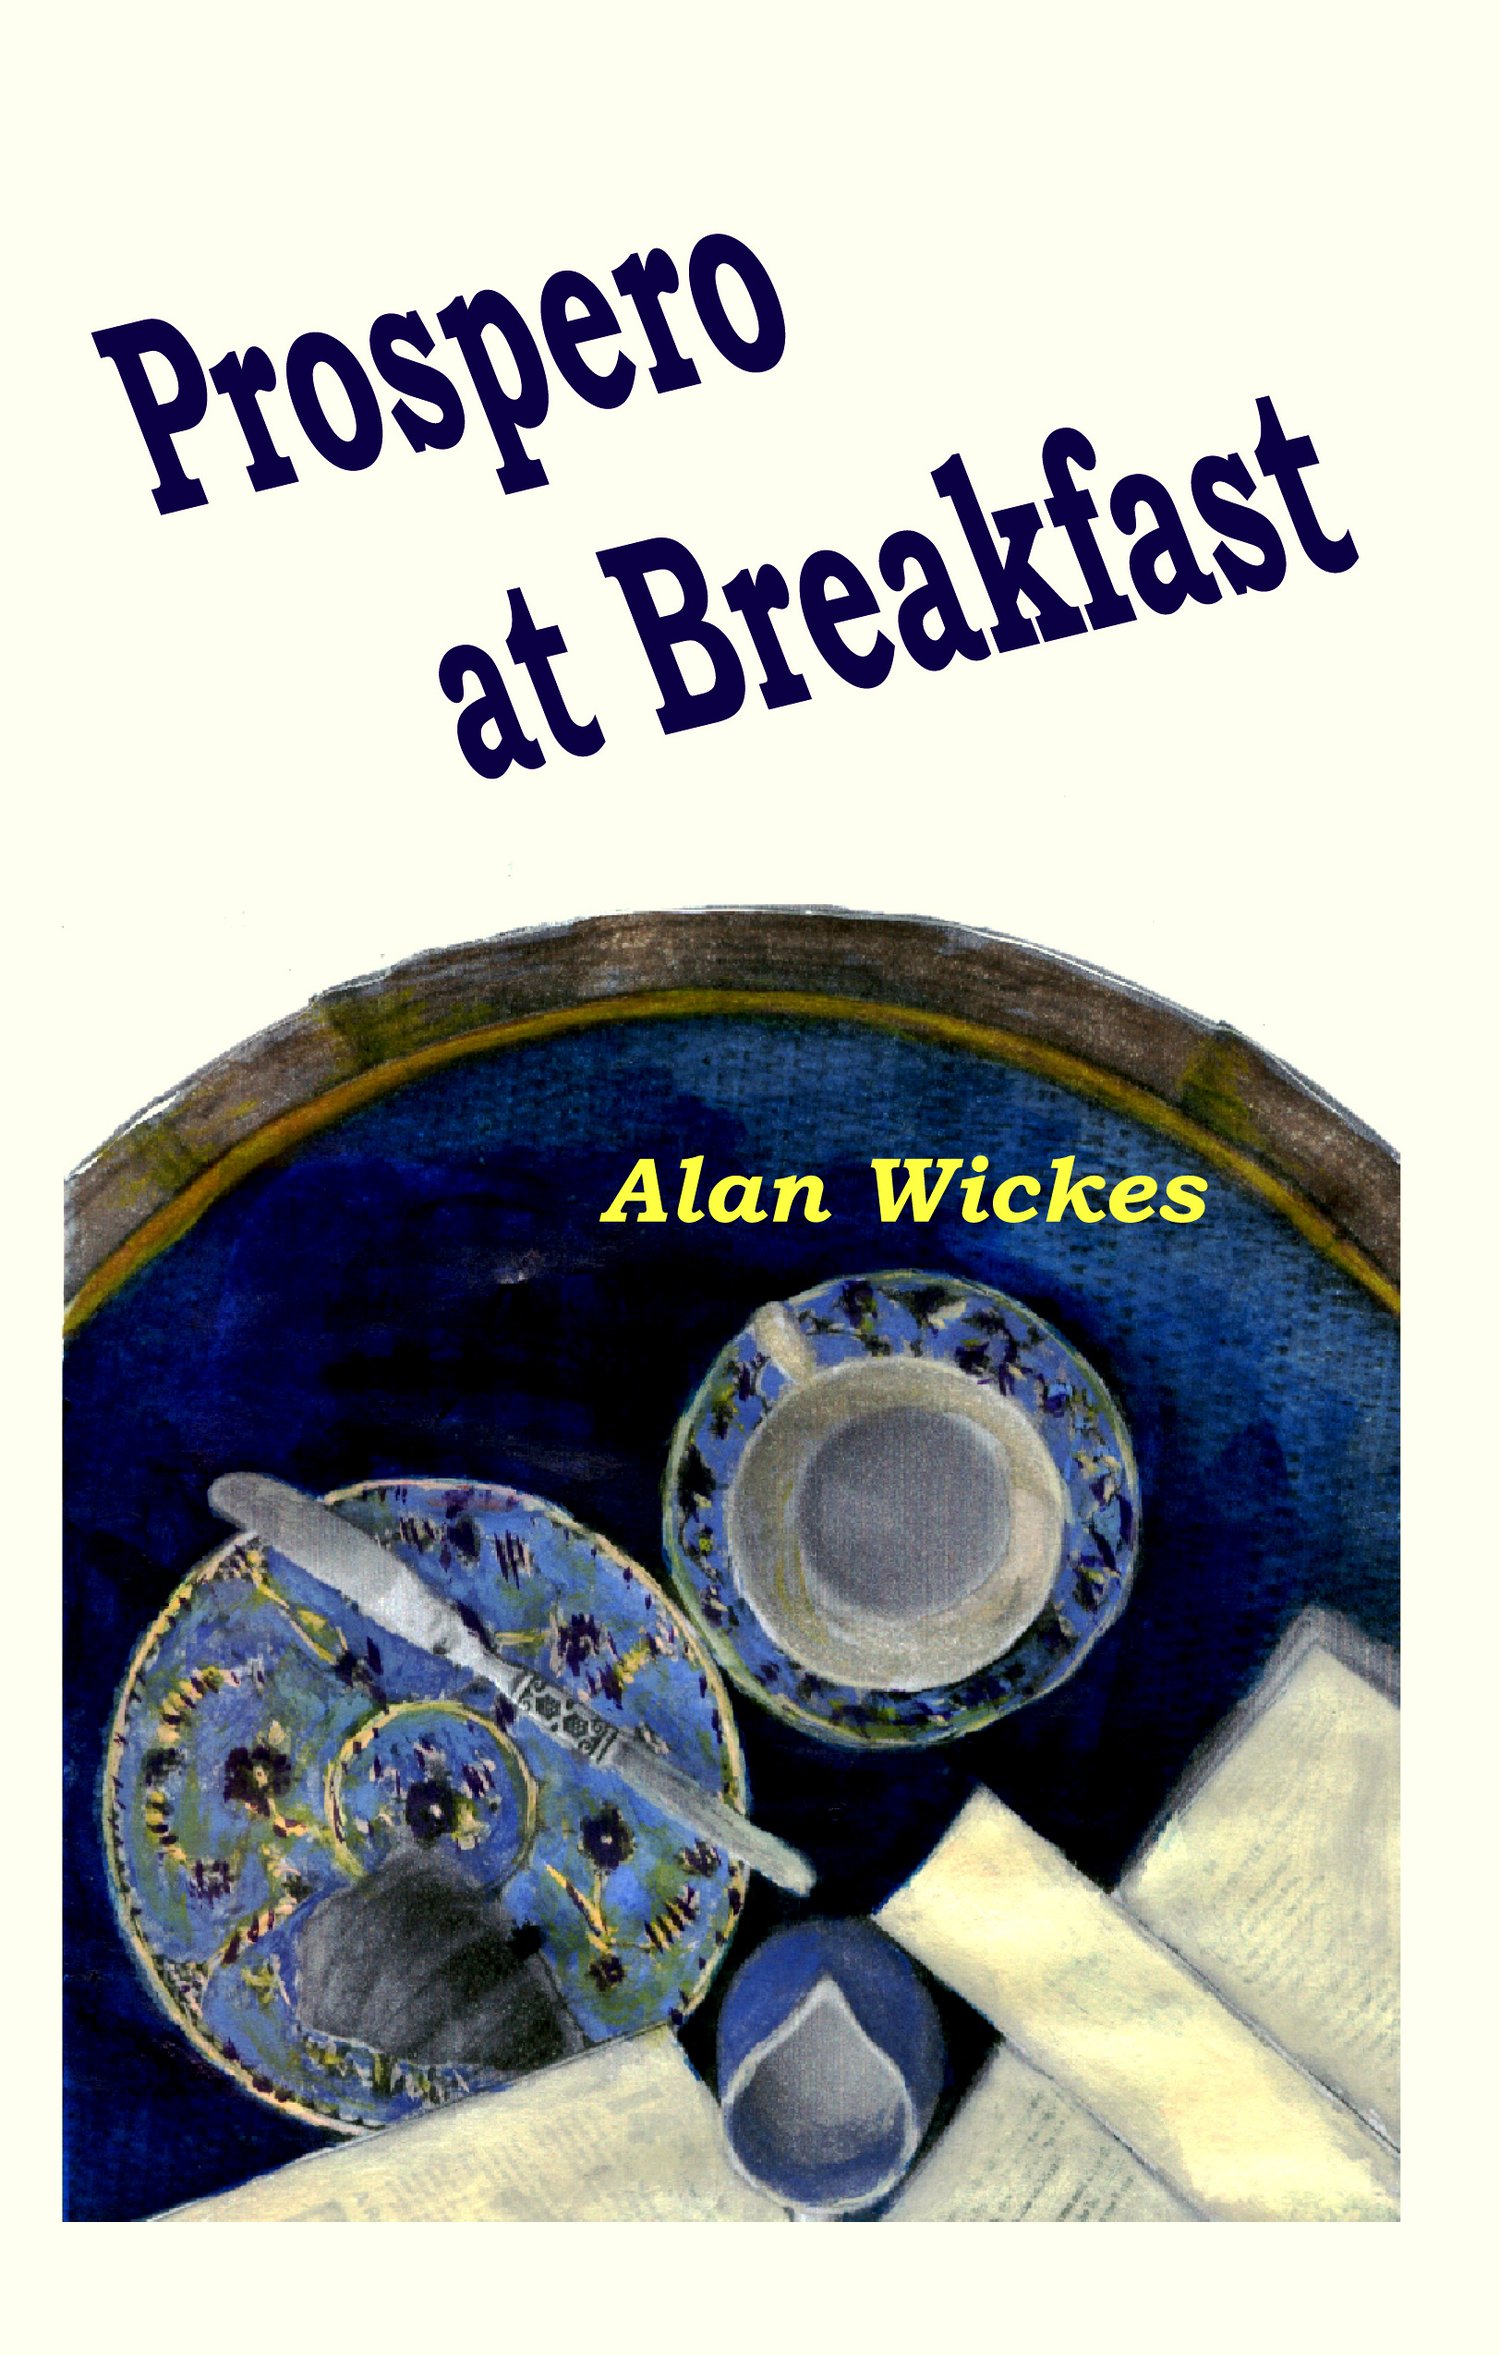 PROSPERO AT BREAKFAST by Alan Wickes